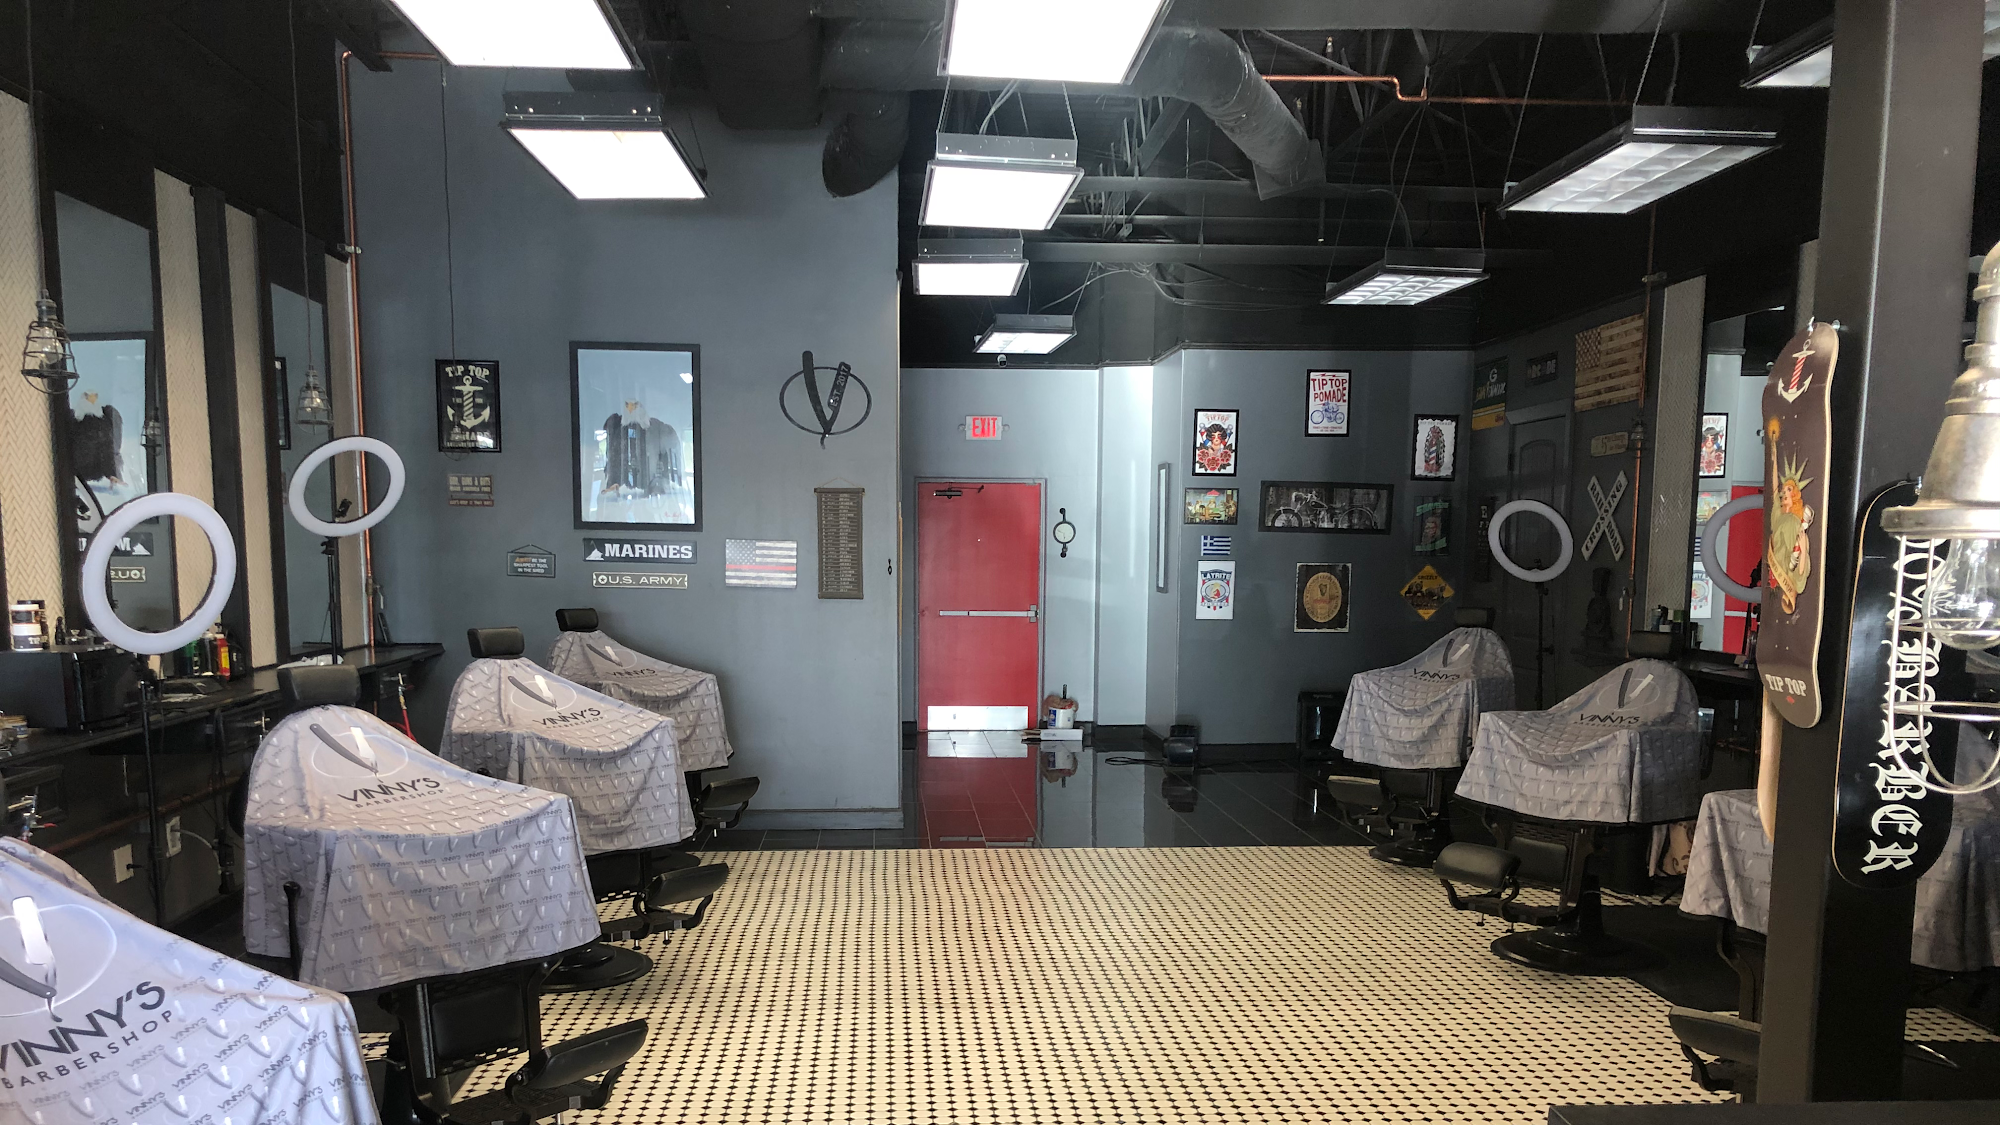 Vinny's Barbershop